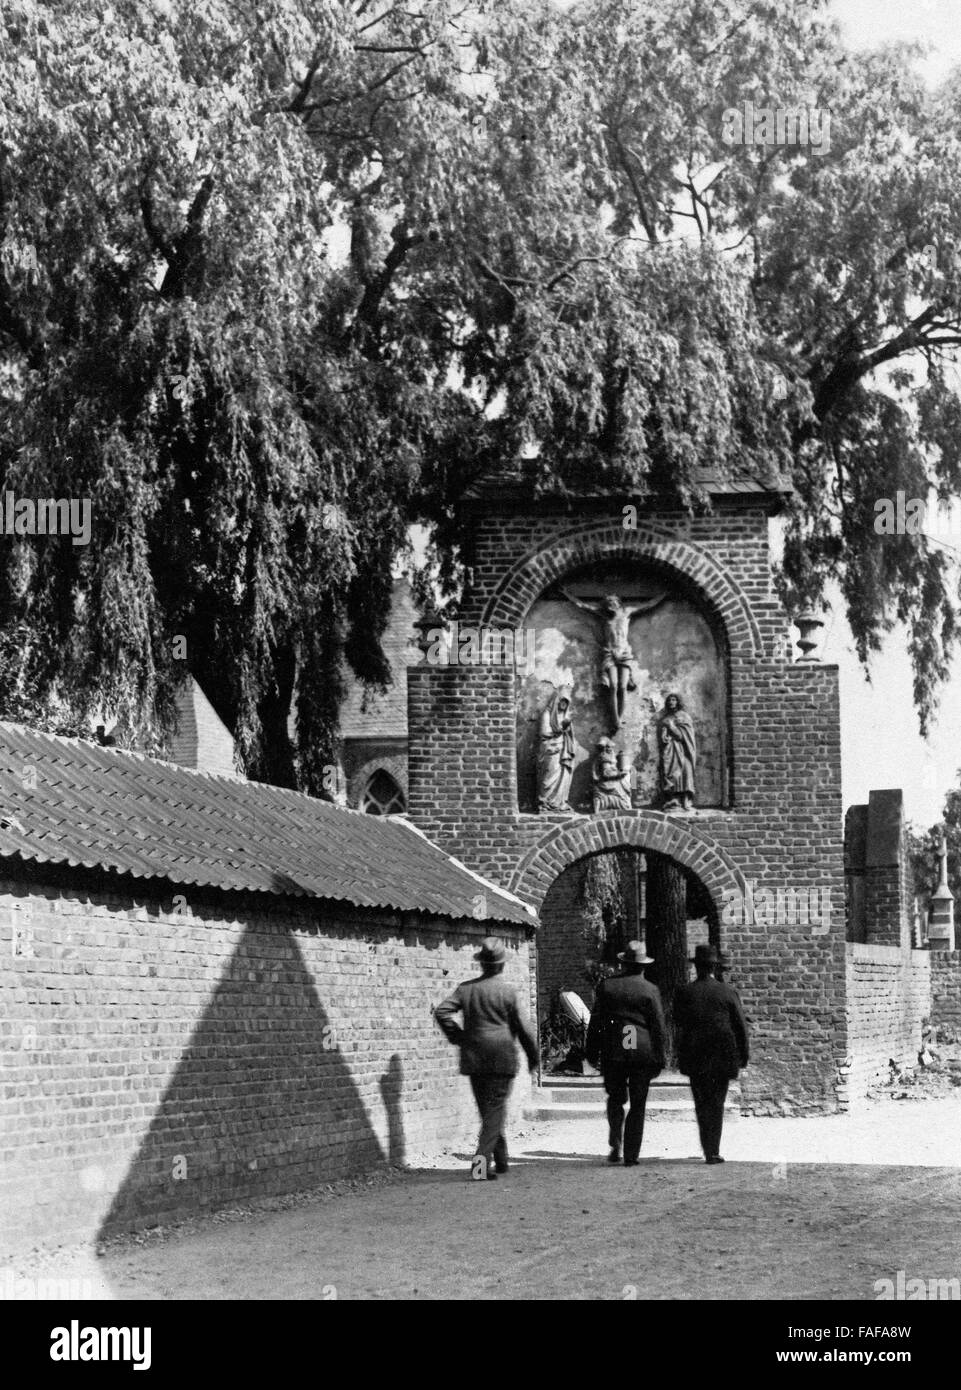 Drei Männer vor dem Eingang zum Friedhof in Köln Esch, Deutschland 1920er Jahre. Tre uomini di fronte all'ingresso del cimitero a Colonia Esch, Germania 1920s. Foto Stock